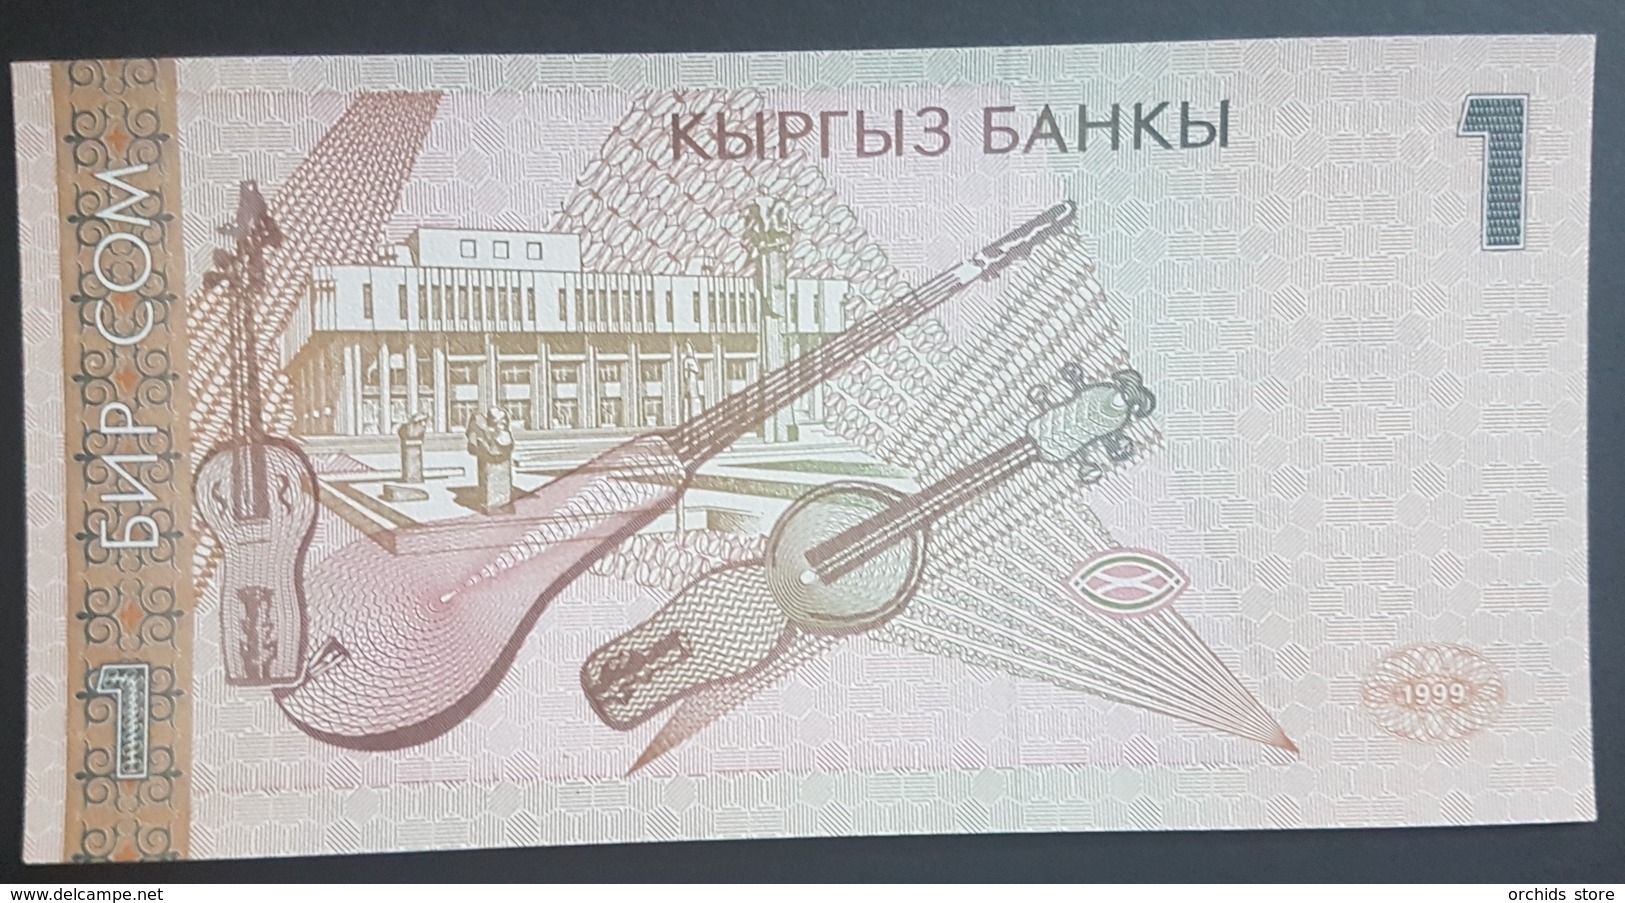 E11g2 - Kyrgyzstan Banknote, 1999, 1 Sum, P-15, UNC - Kyrgyzstan